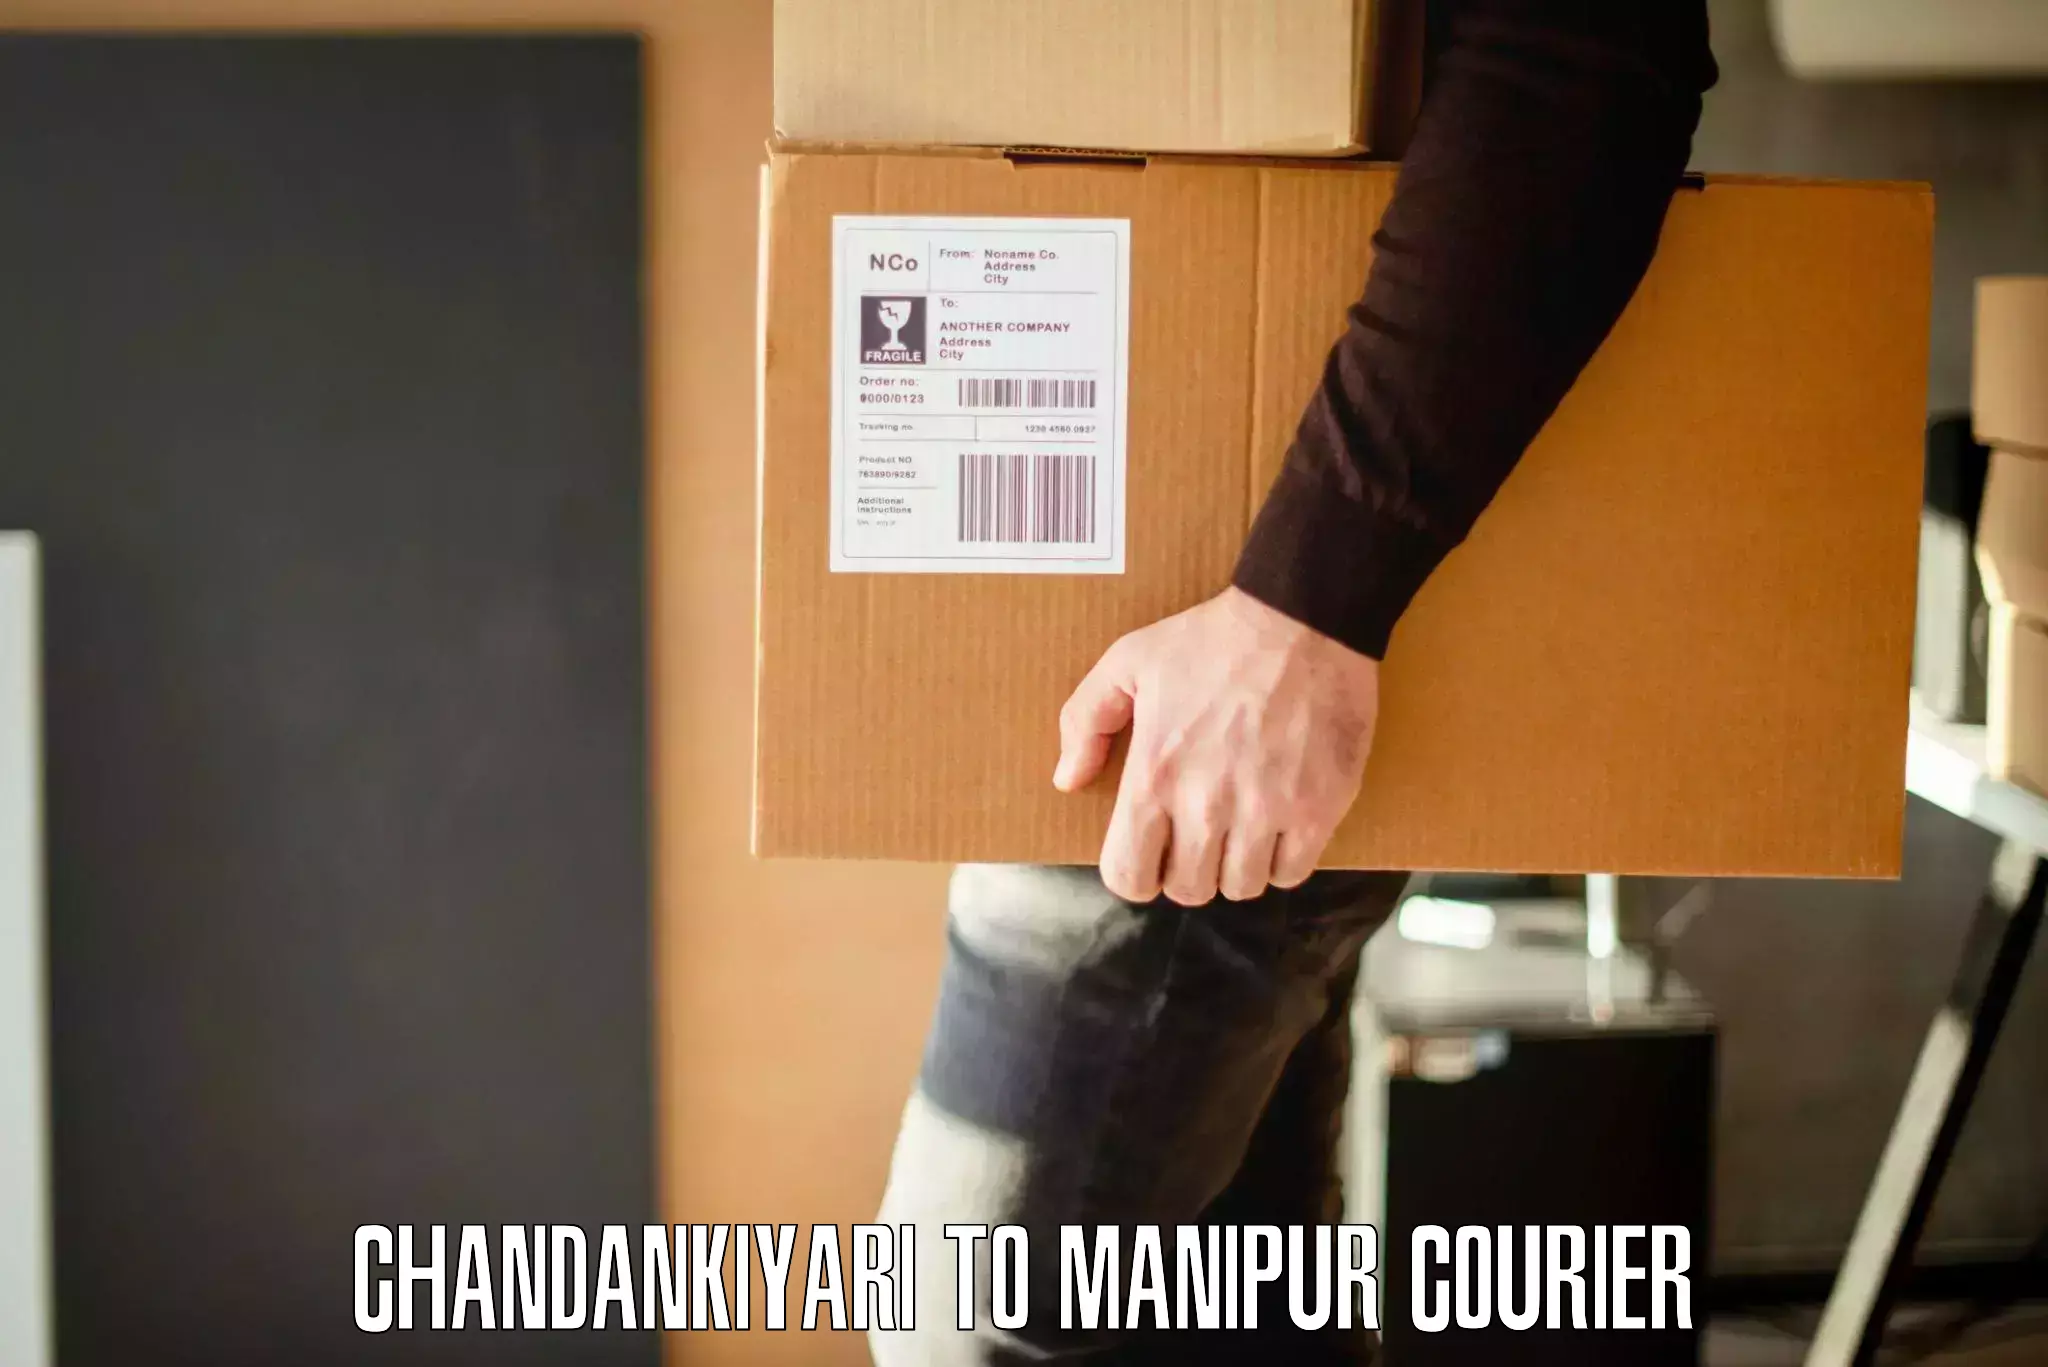 Quality moving company Chandankiyari to Kanti